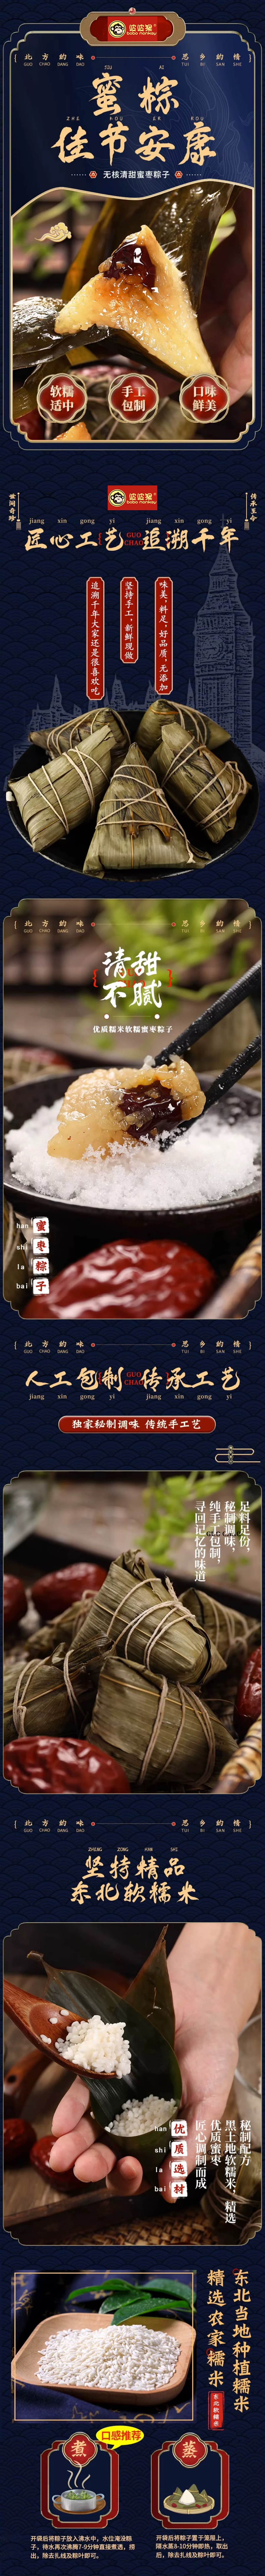 波波猴 「最新上新口感絕佳」紅袍豆沙粽子 2枚 240g端午前最好吃